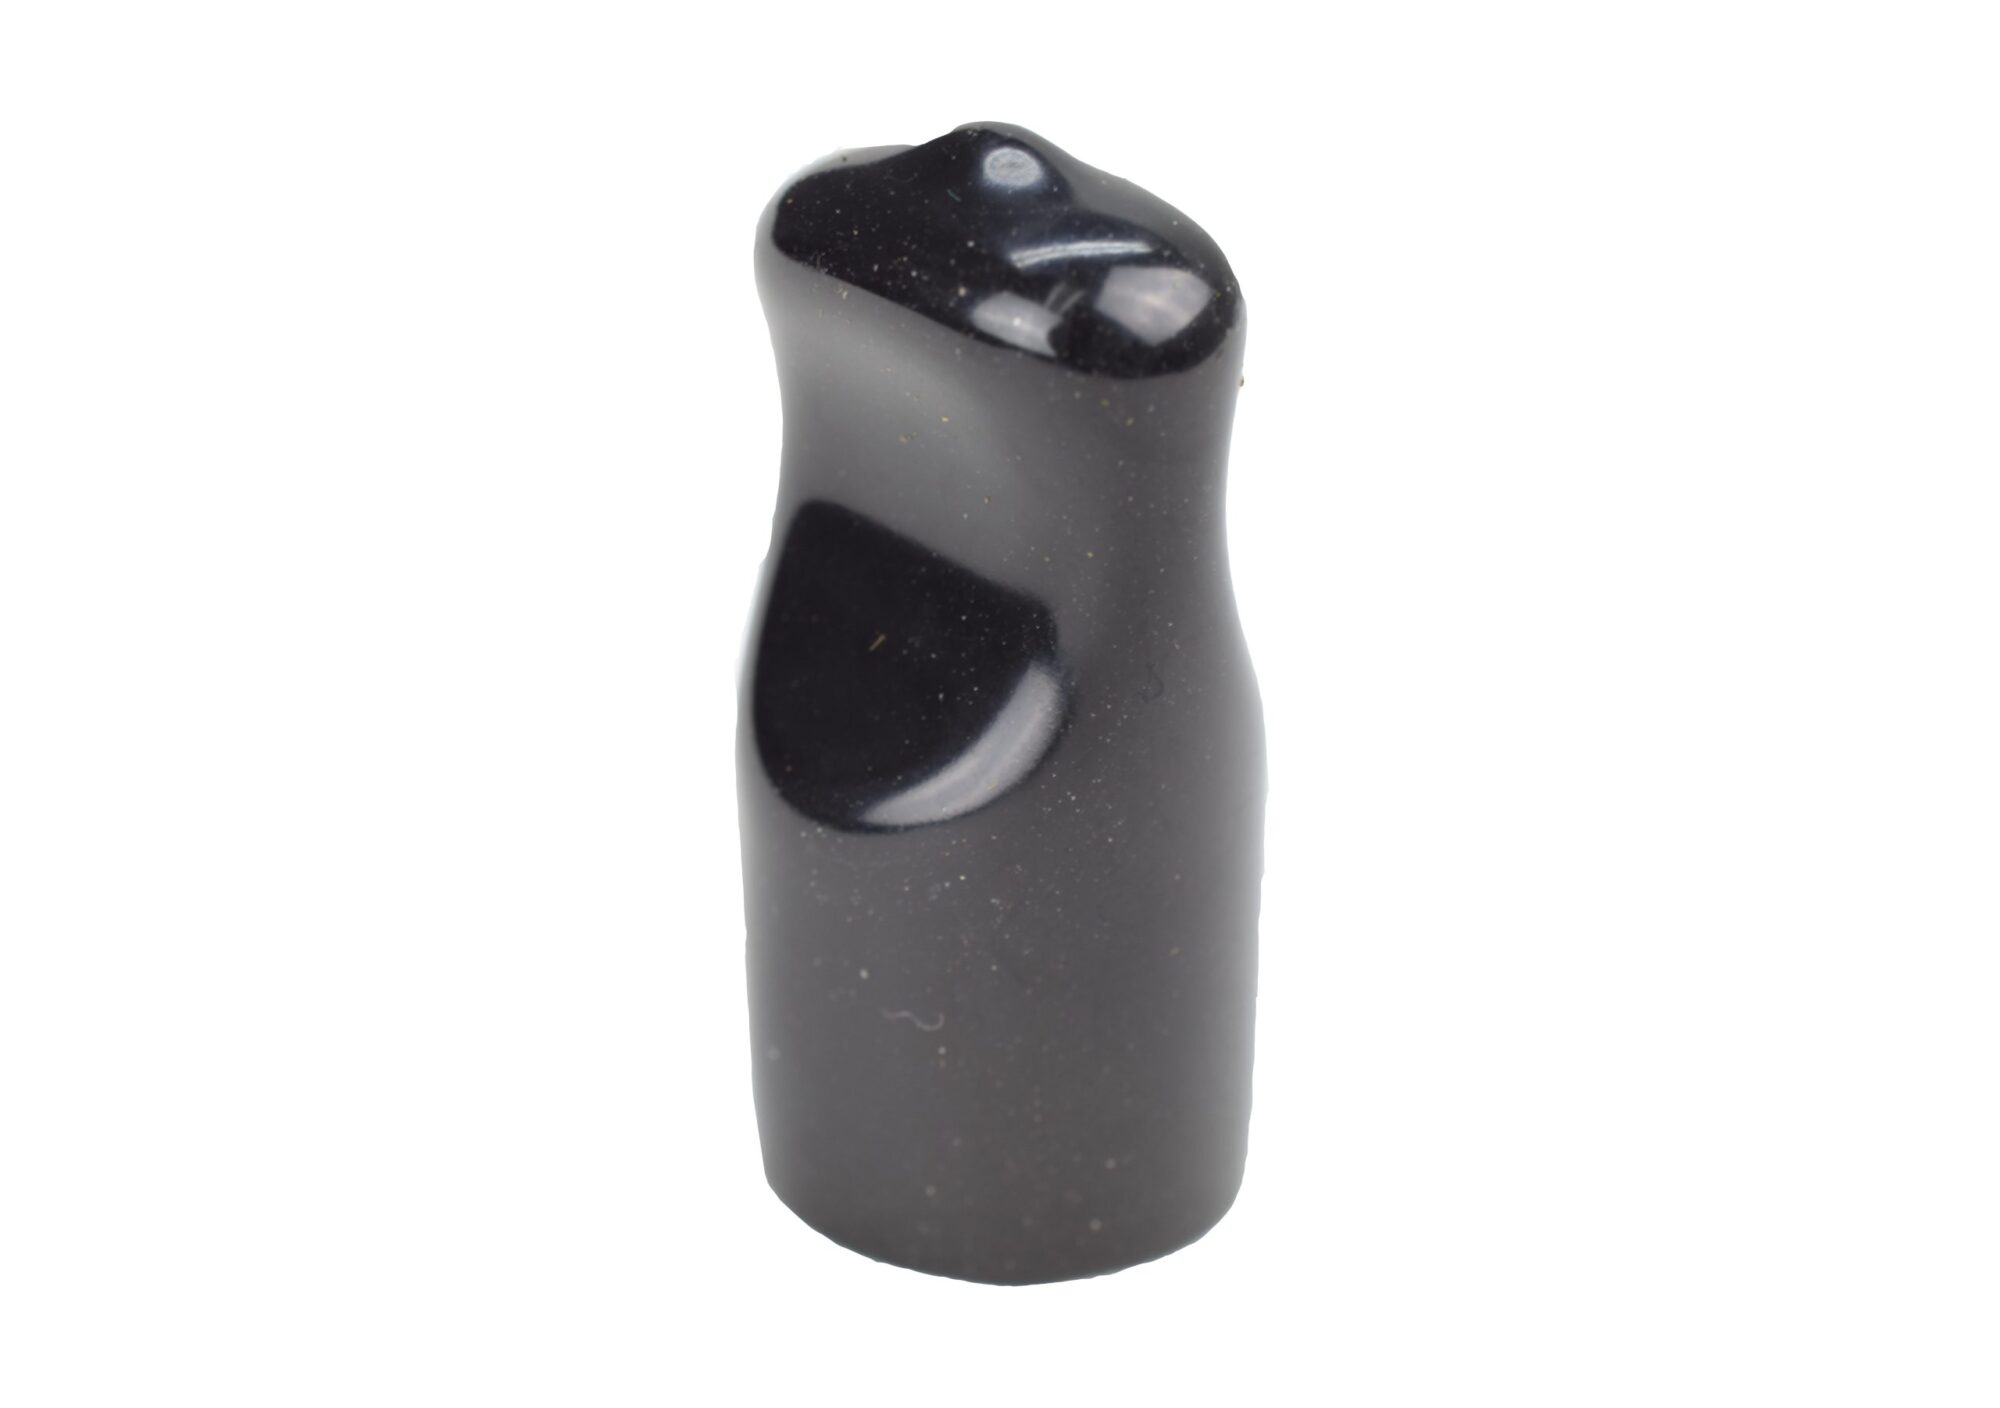 SE625 Faucet Spout Cover - Black Plastic